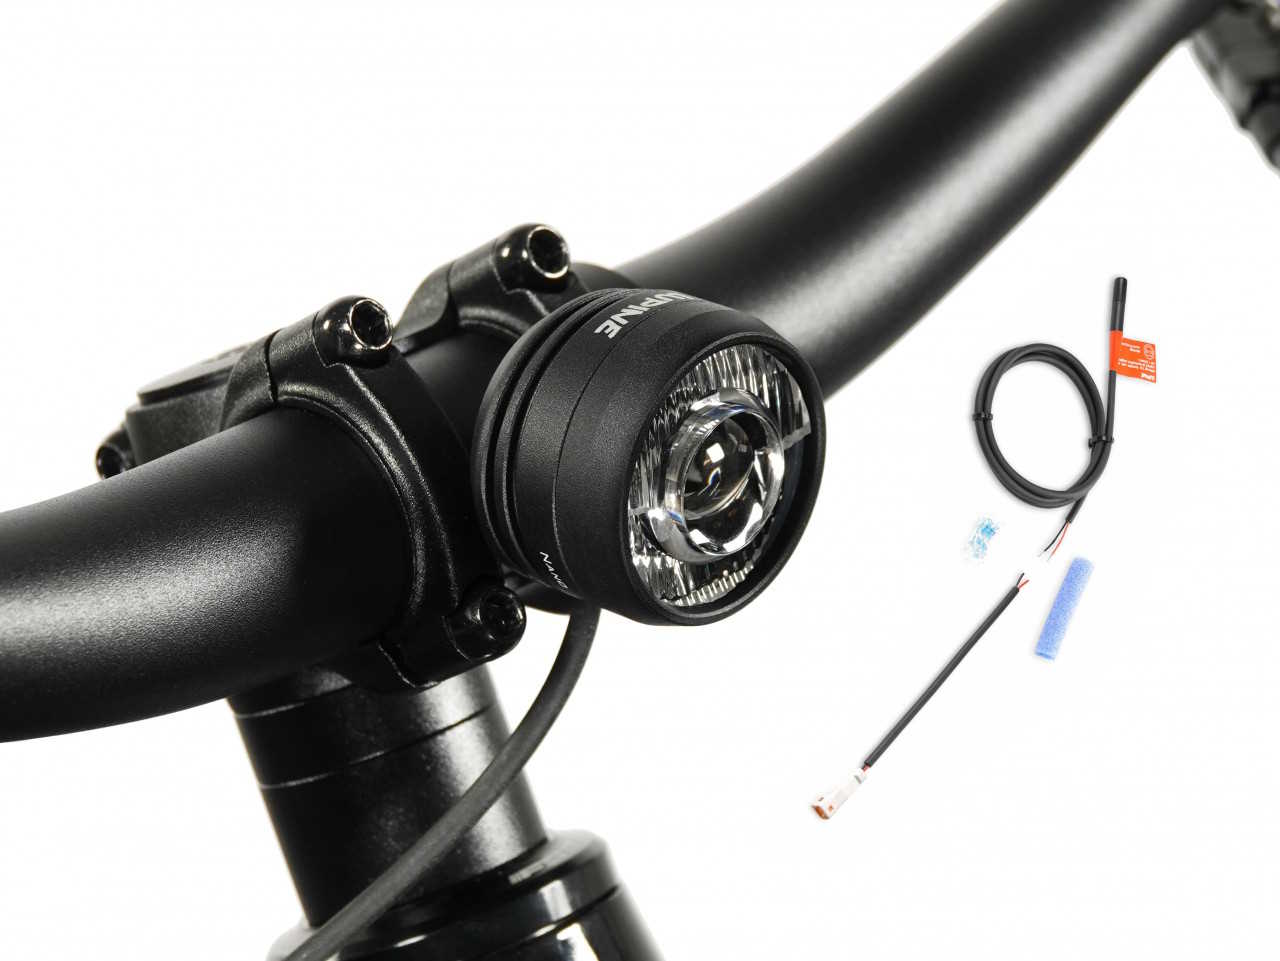 Produktbild von Lupine SL Nano für E-Bikes mit Giant Motor, E-Bike Beleuchtung mit 1000 Lumen Fernlicht, Lenkerhalter 35mm + Kabelfernbedienung